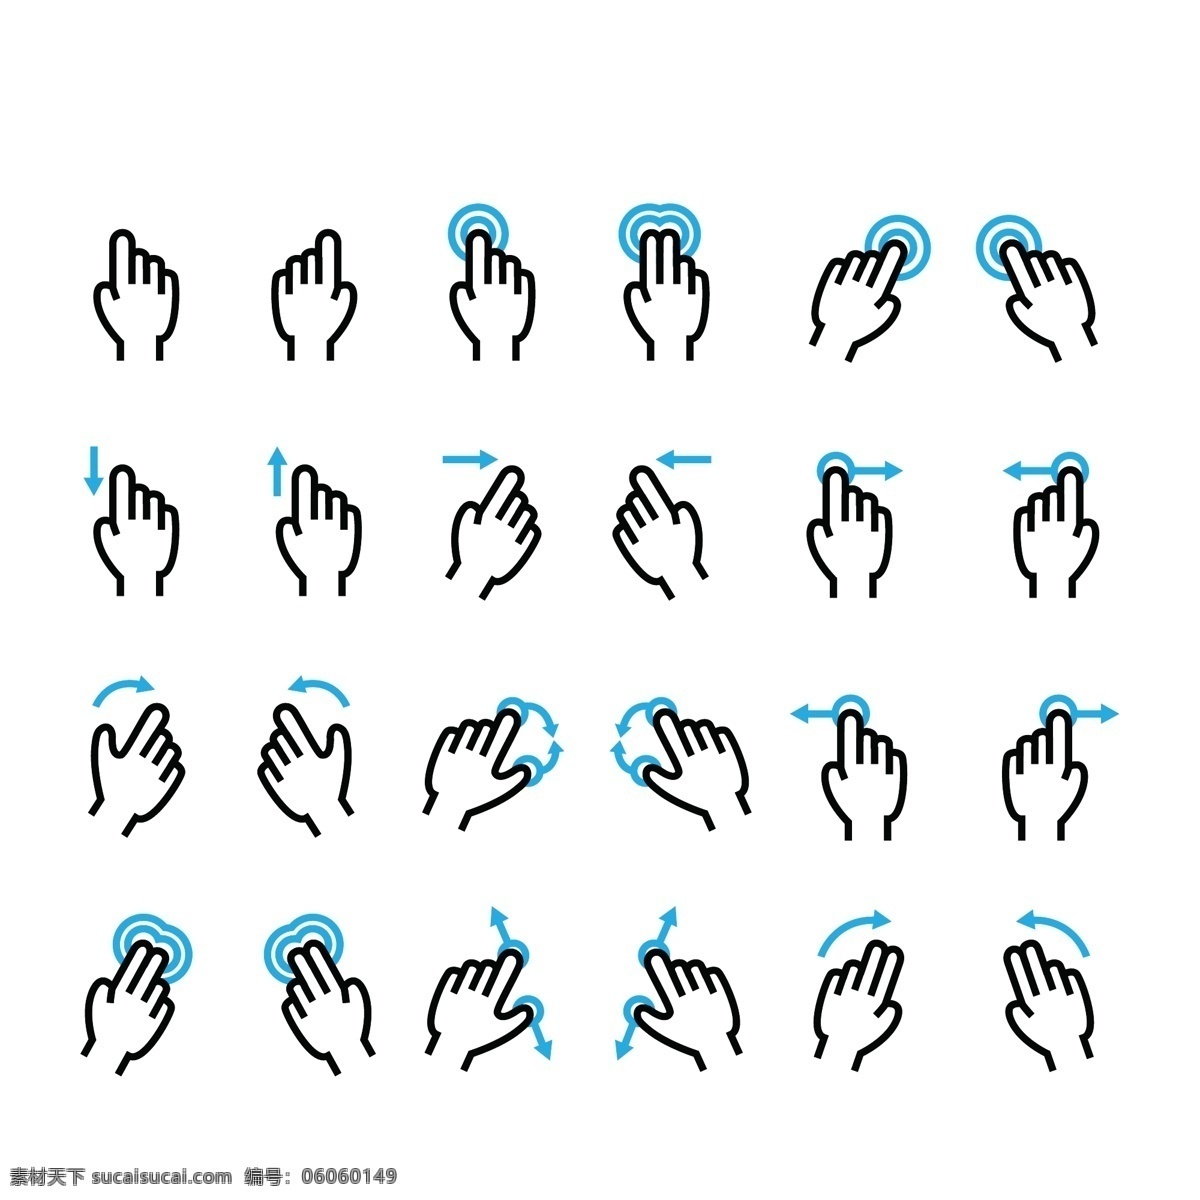 手势 触 屏 移动 设备 行动 箭头点击 手指 手 持有 人类 图标 插图 输入 接口 隐喻 推动 绘画 棕榈 个人电脑 印刷 旋转 屏幕 滚动 标志 刷卡 象征 技术 触摸 矢量 标志图标 其他图标